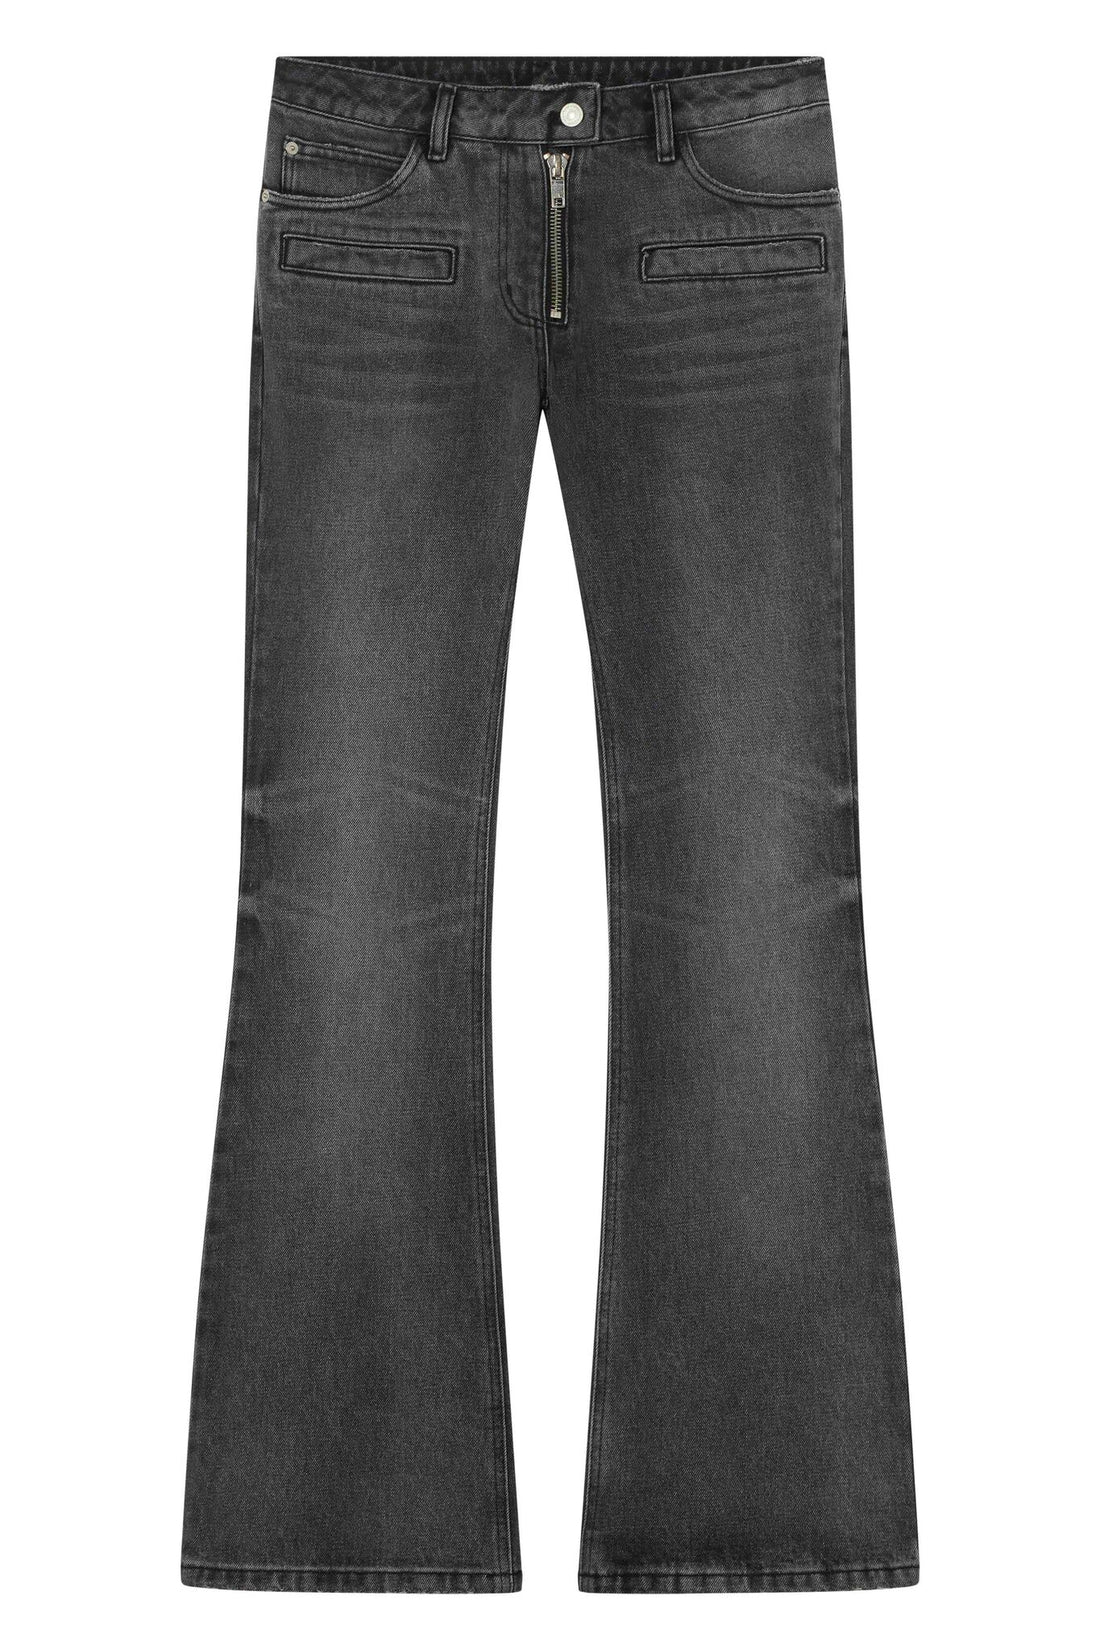 Courrèges Bootcut pants zipped black denim